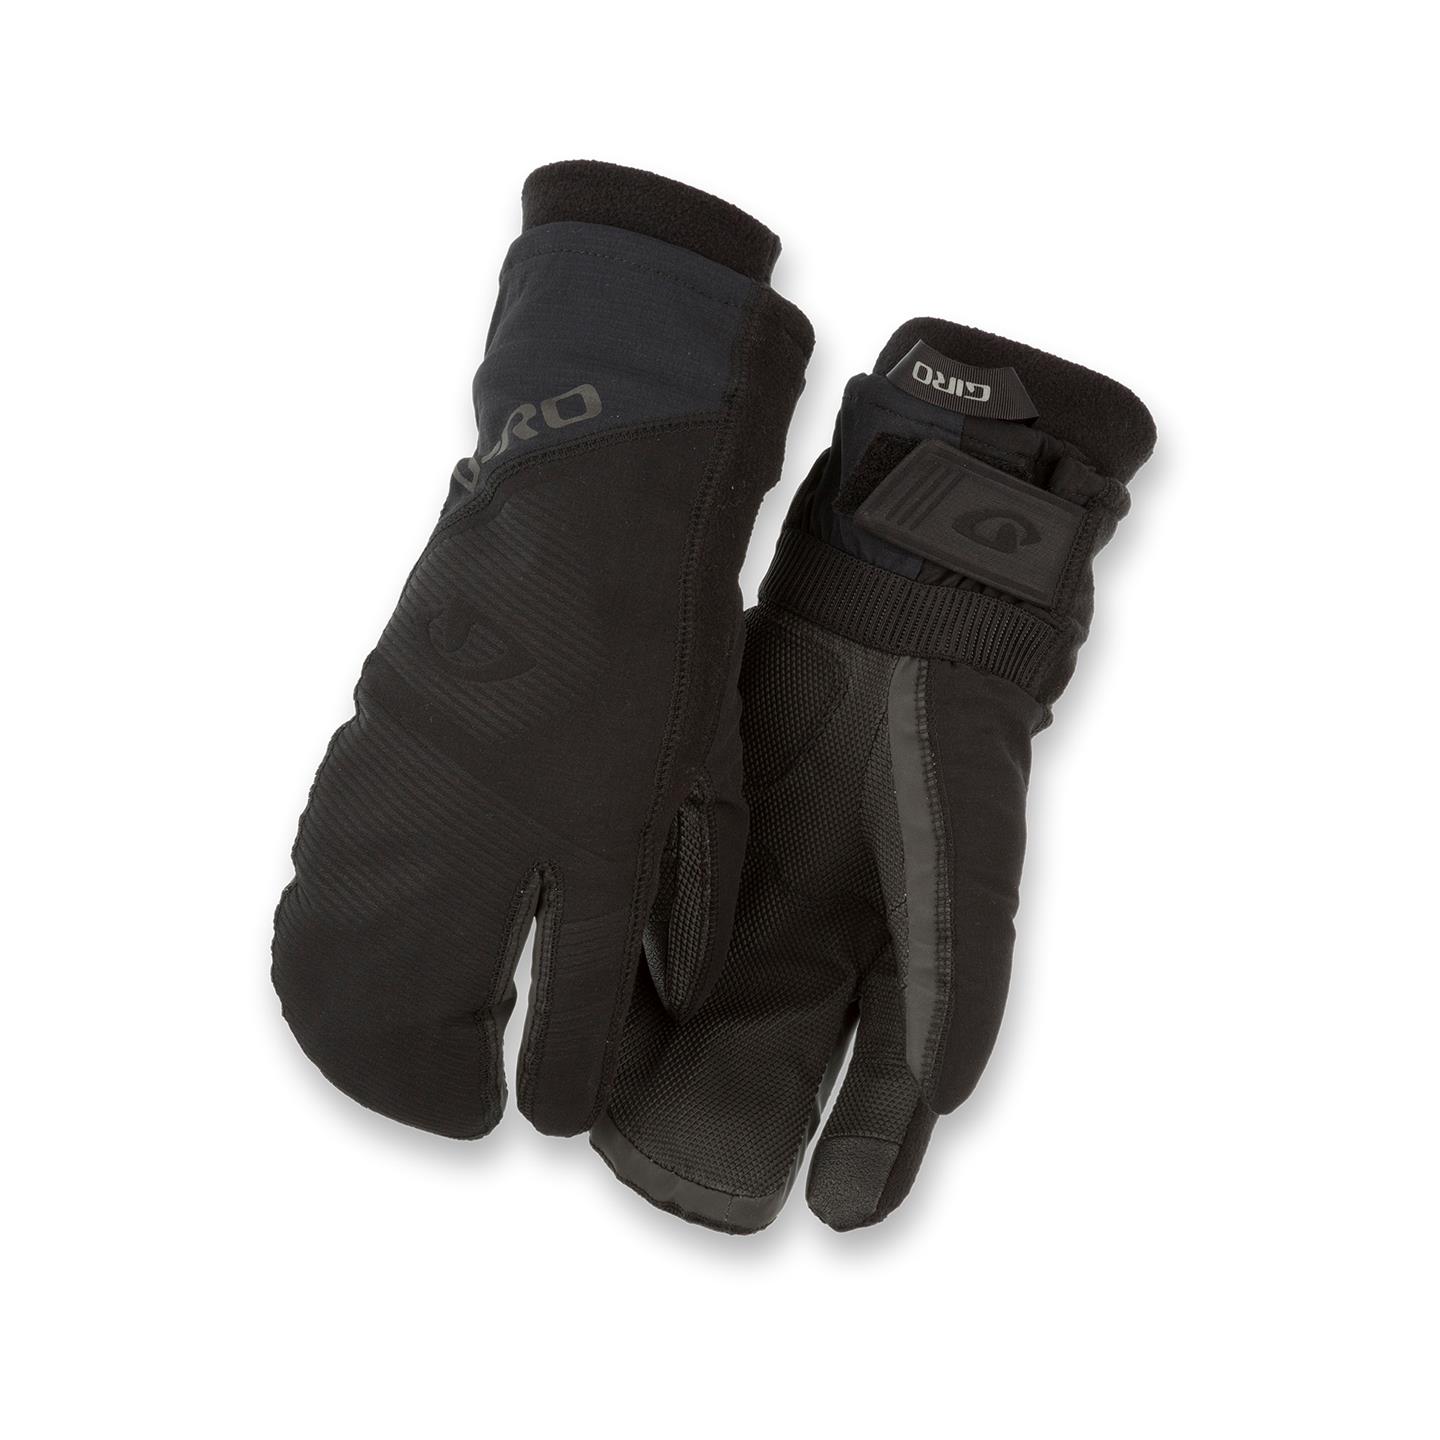 WEB_Image_GIRO_100_PROOF_BLK_L_Sykkelhanske_vinter_giro-100-proof-winter-gloves-black2084468121_plid_23084